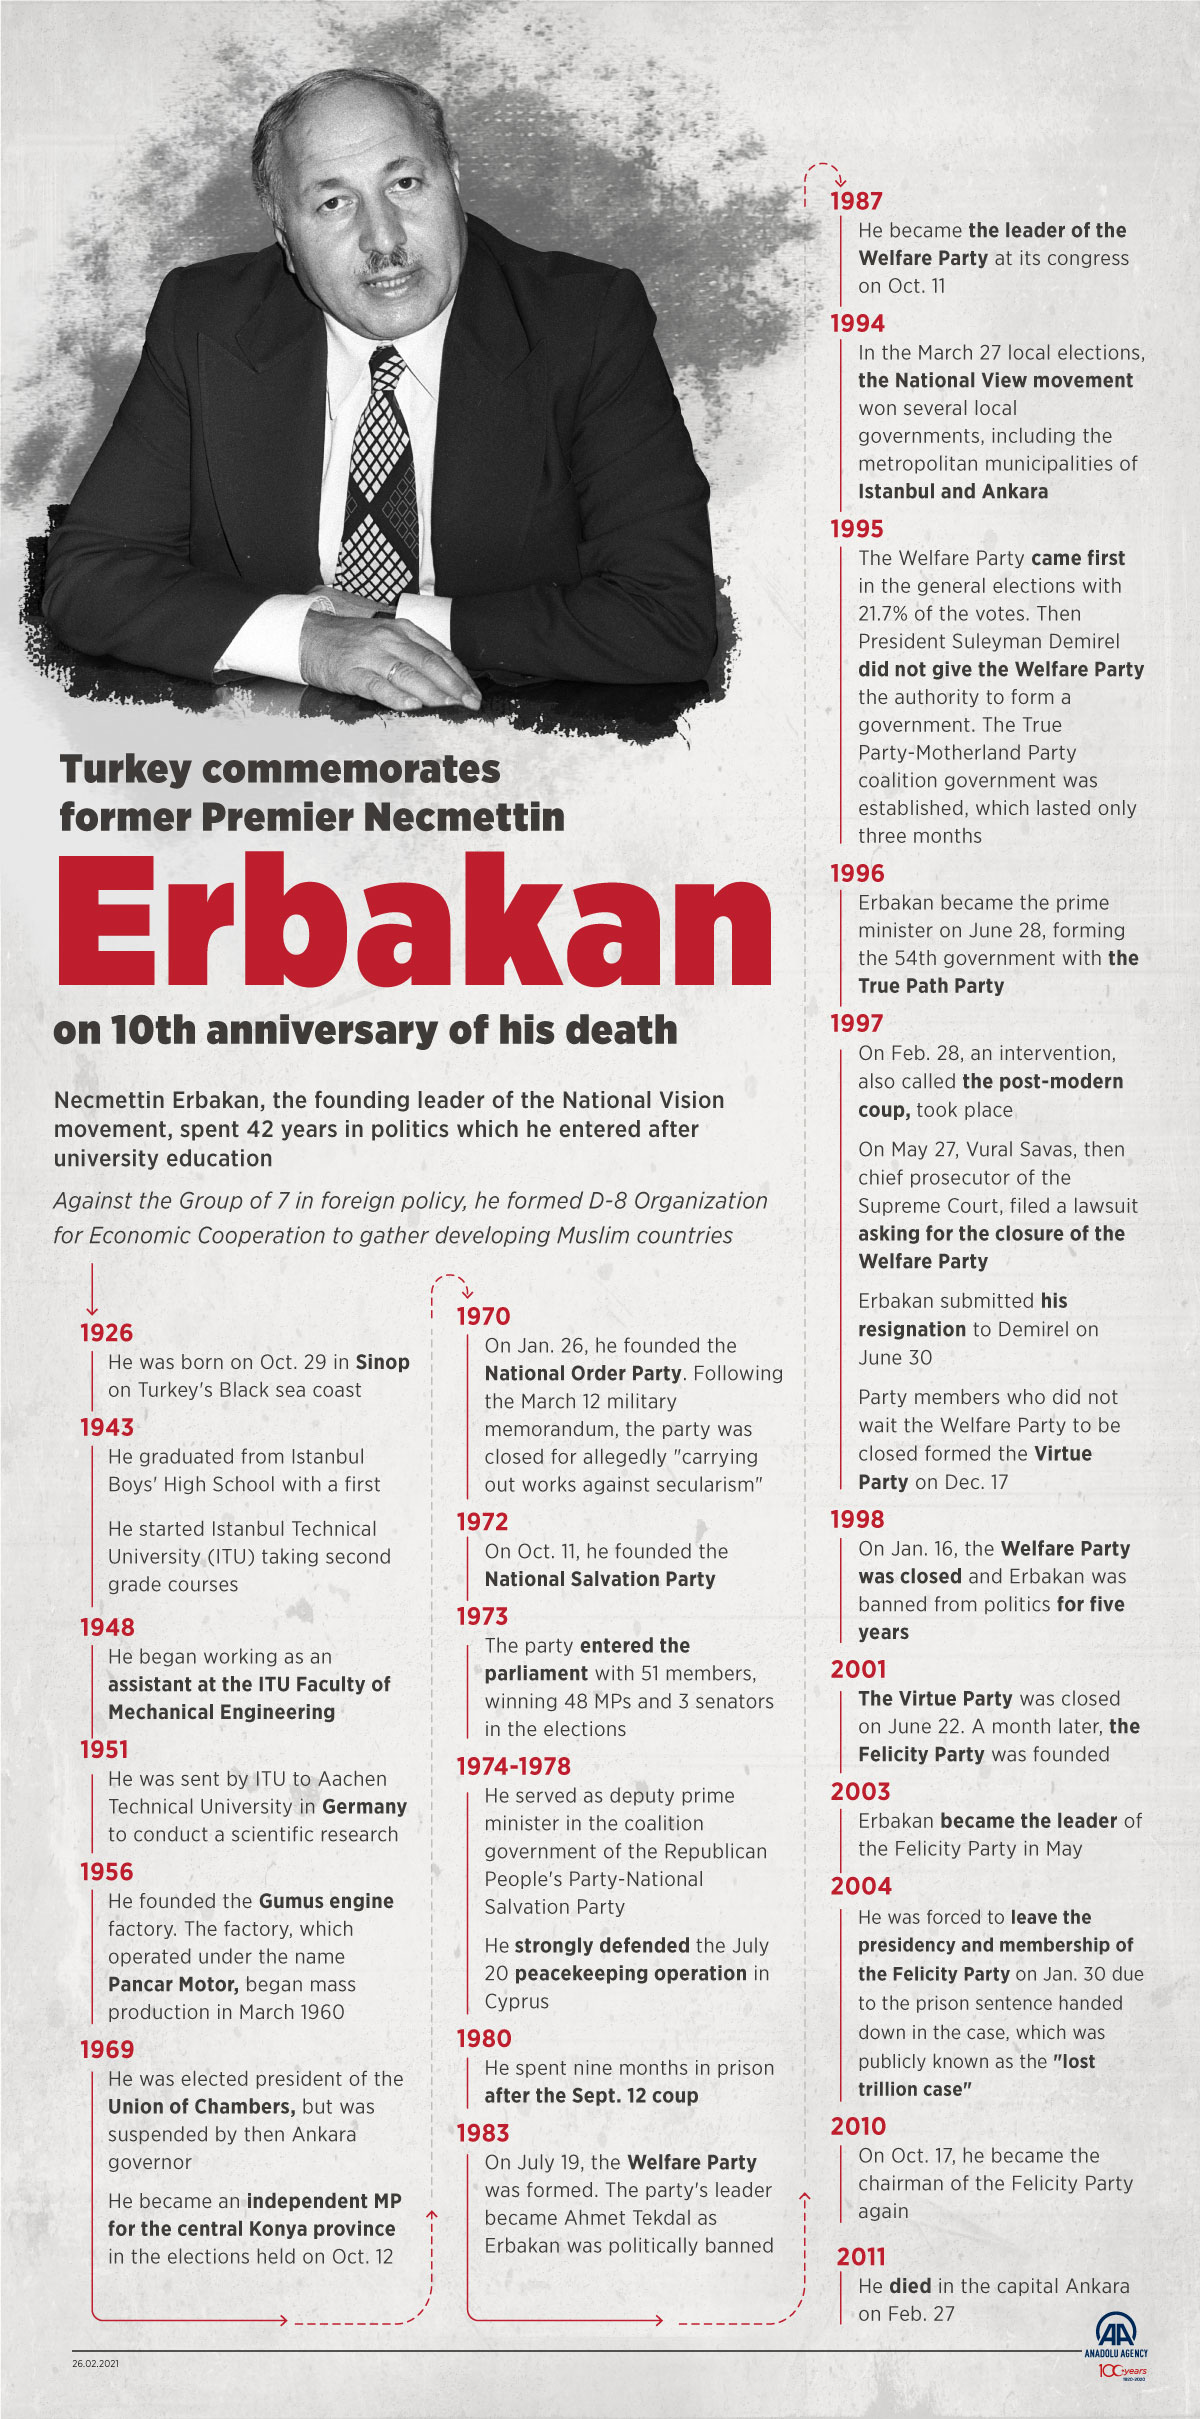 Turkey commemorates former Premier Necmettin Erbakan on 10th anniversary of his death